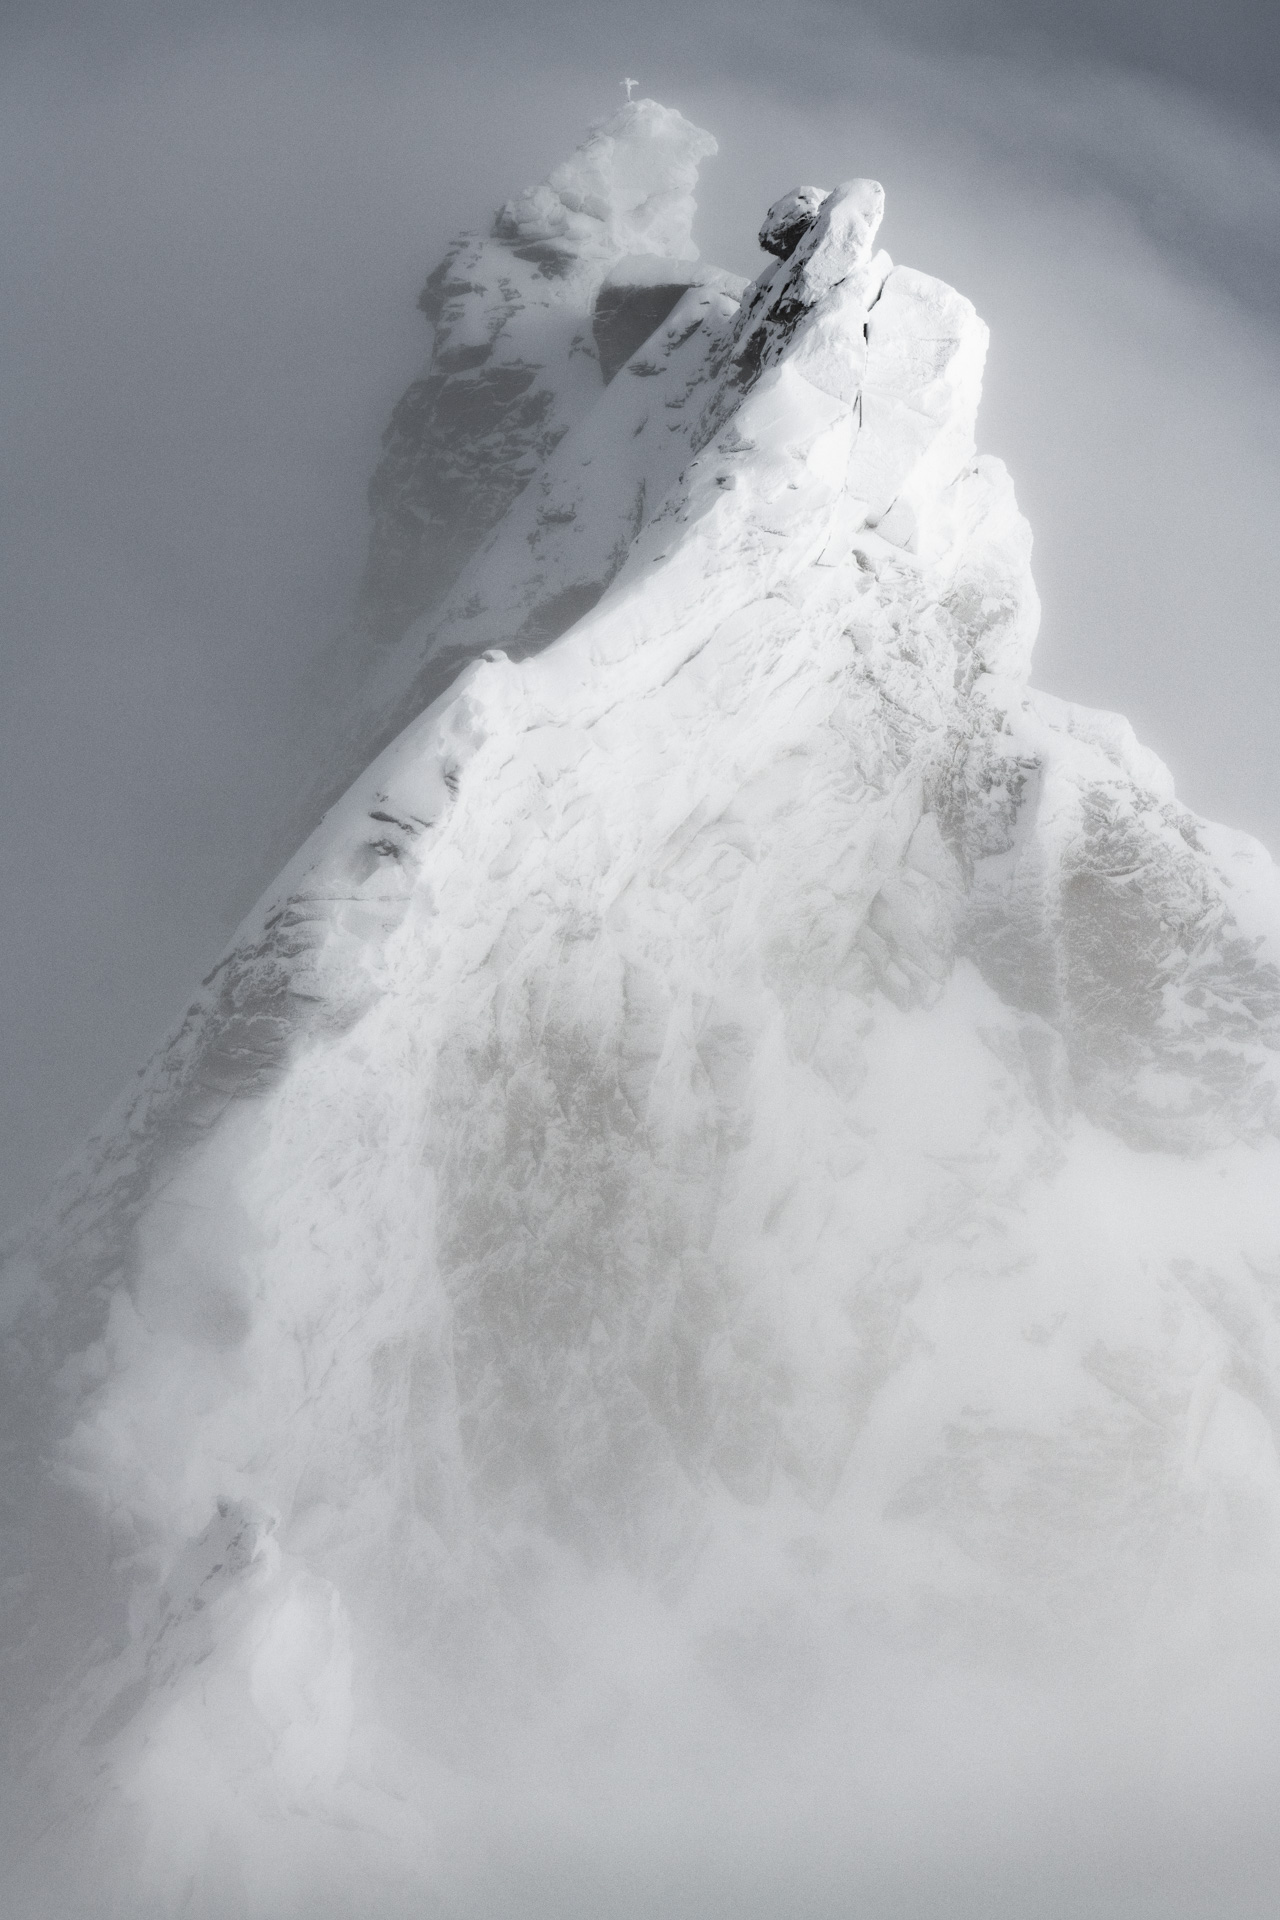 Zinalrothorn - Sommet des Alpes engadine dans la Vallée de Zermatt en noir et blanc